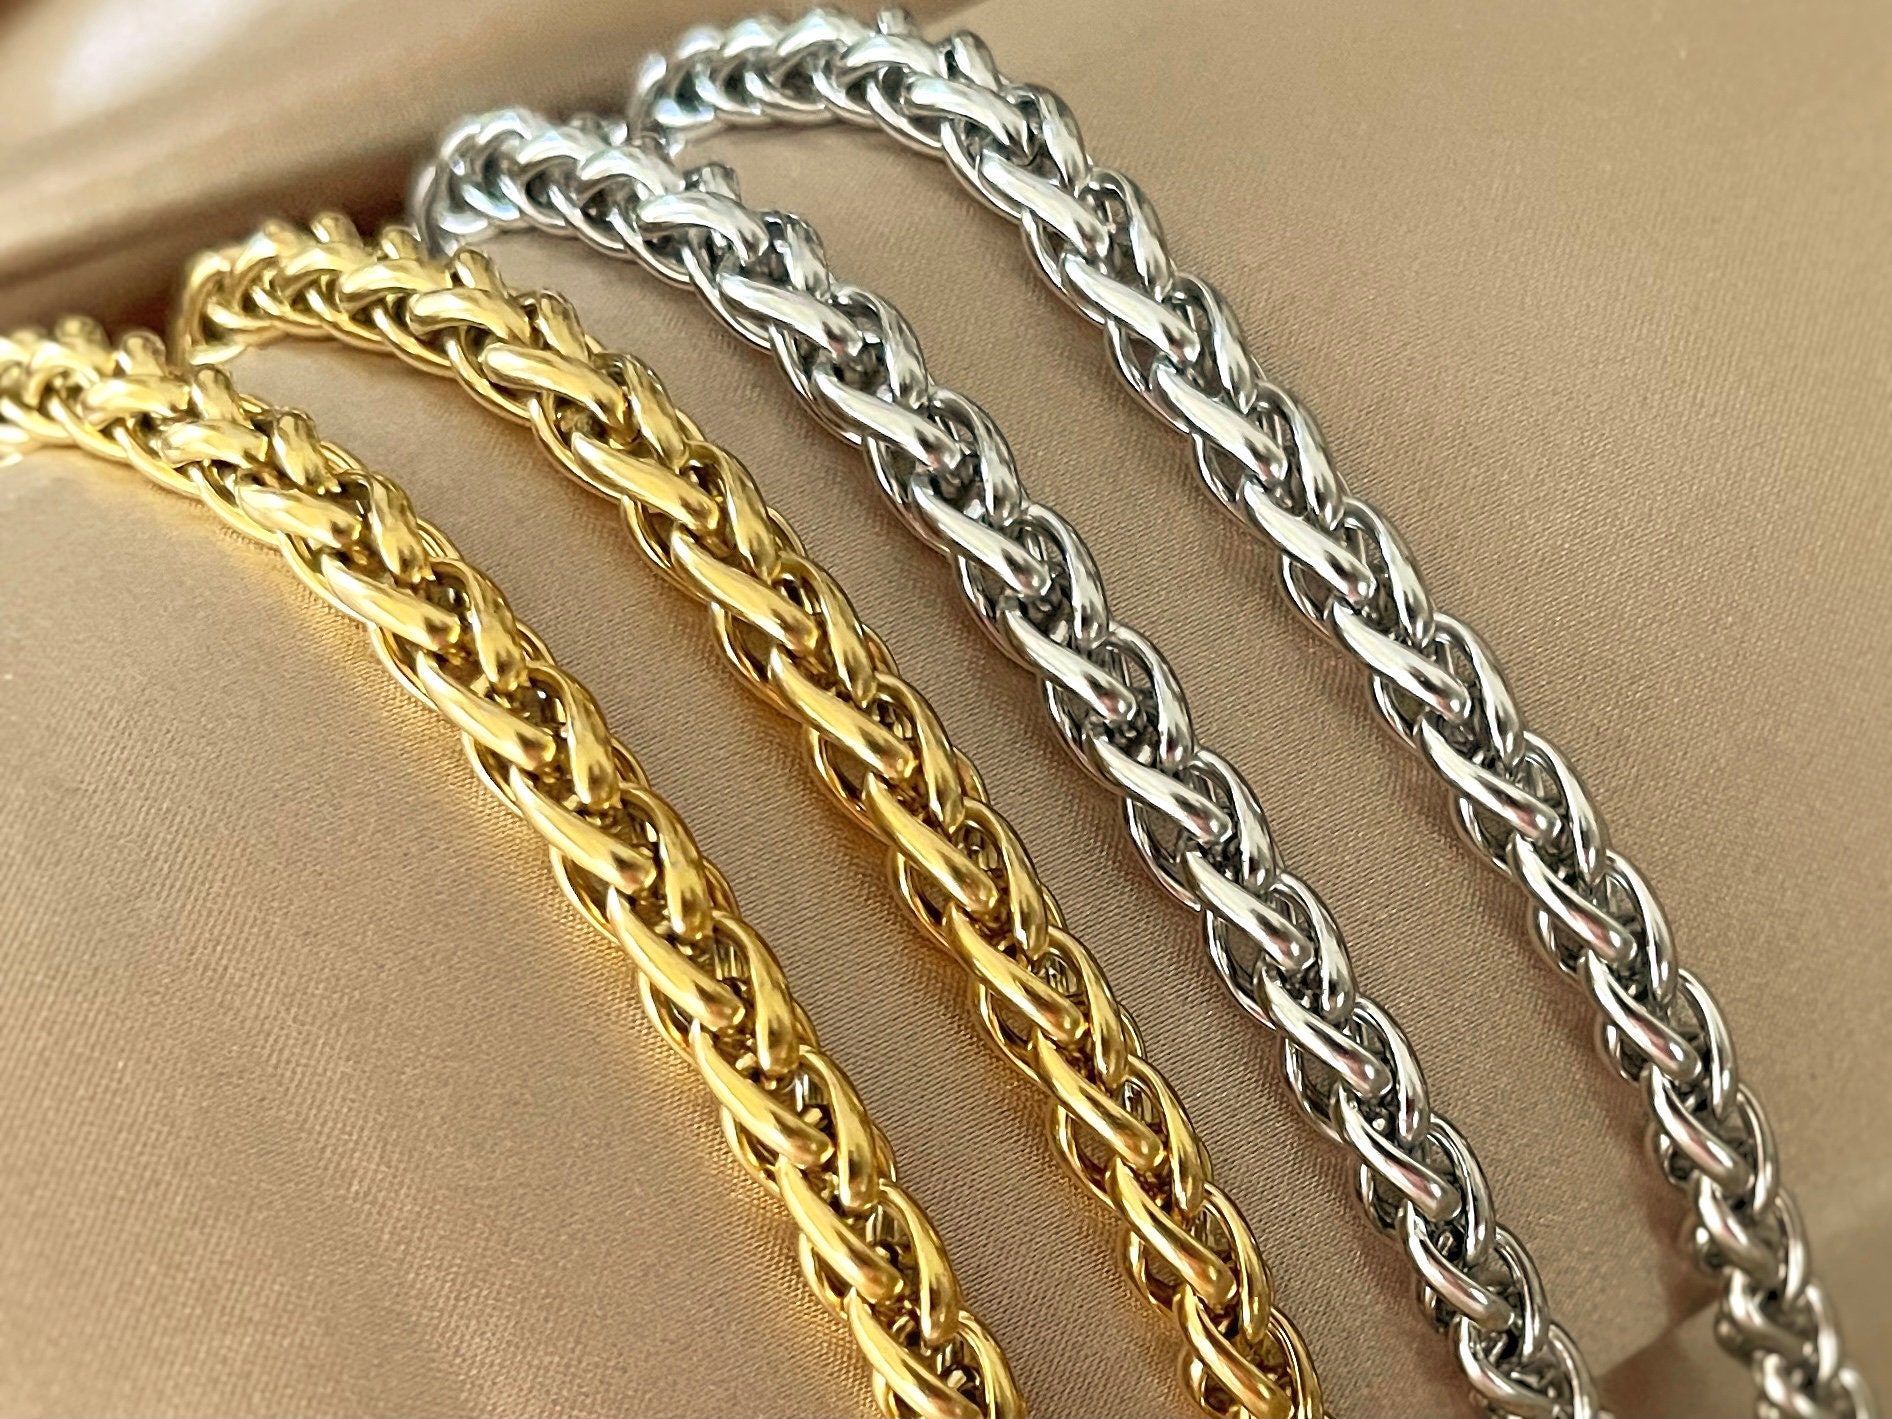 5mm Golden Purse Wheat Chain Purse Strap Wheat Chain Chain 